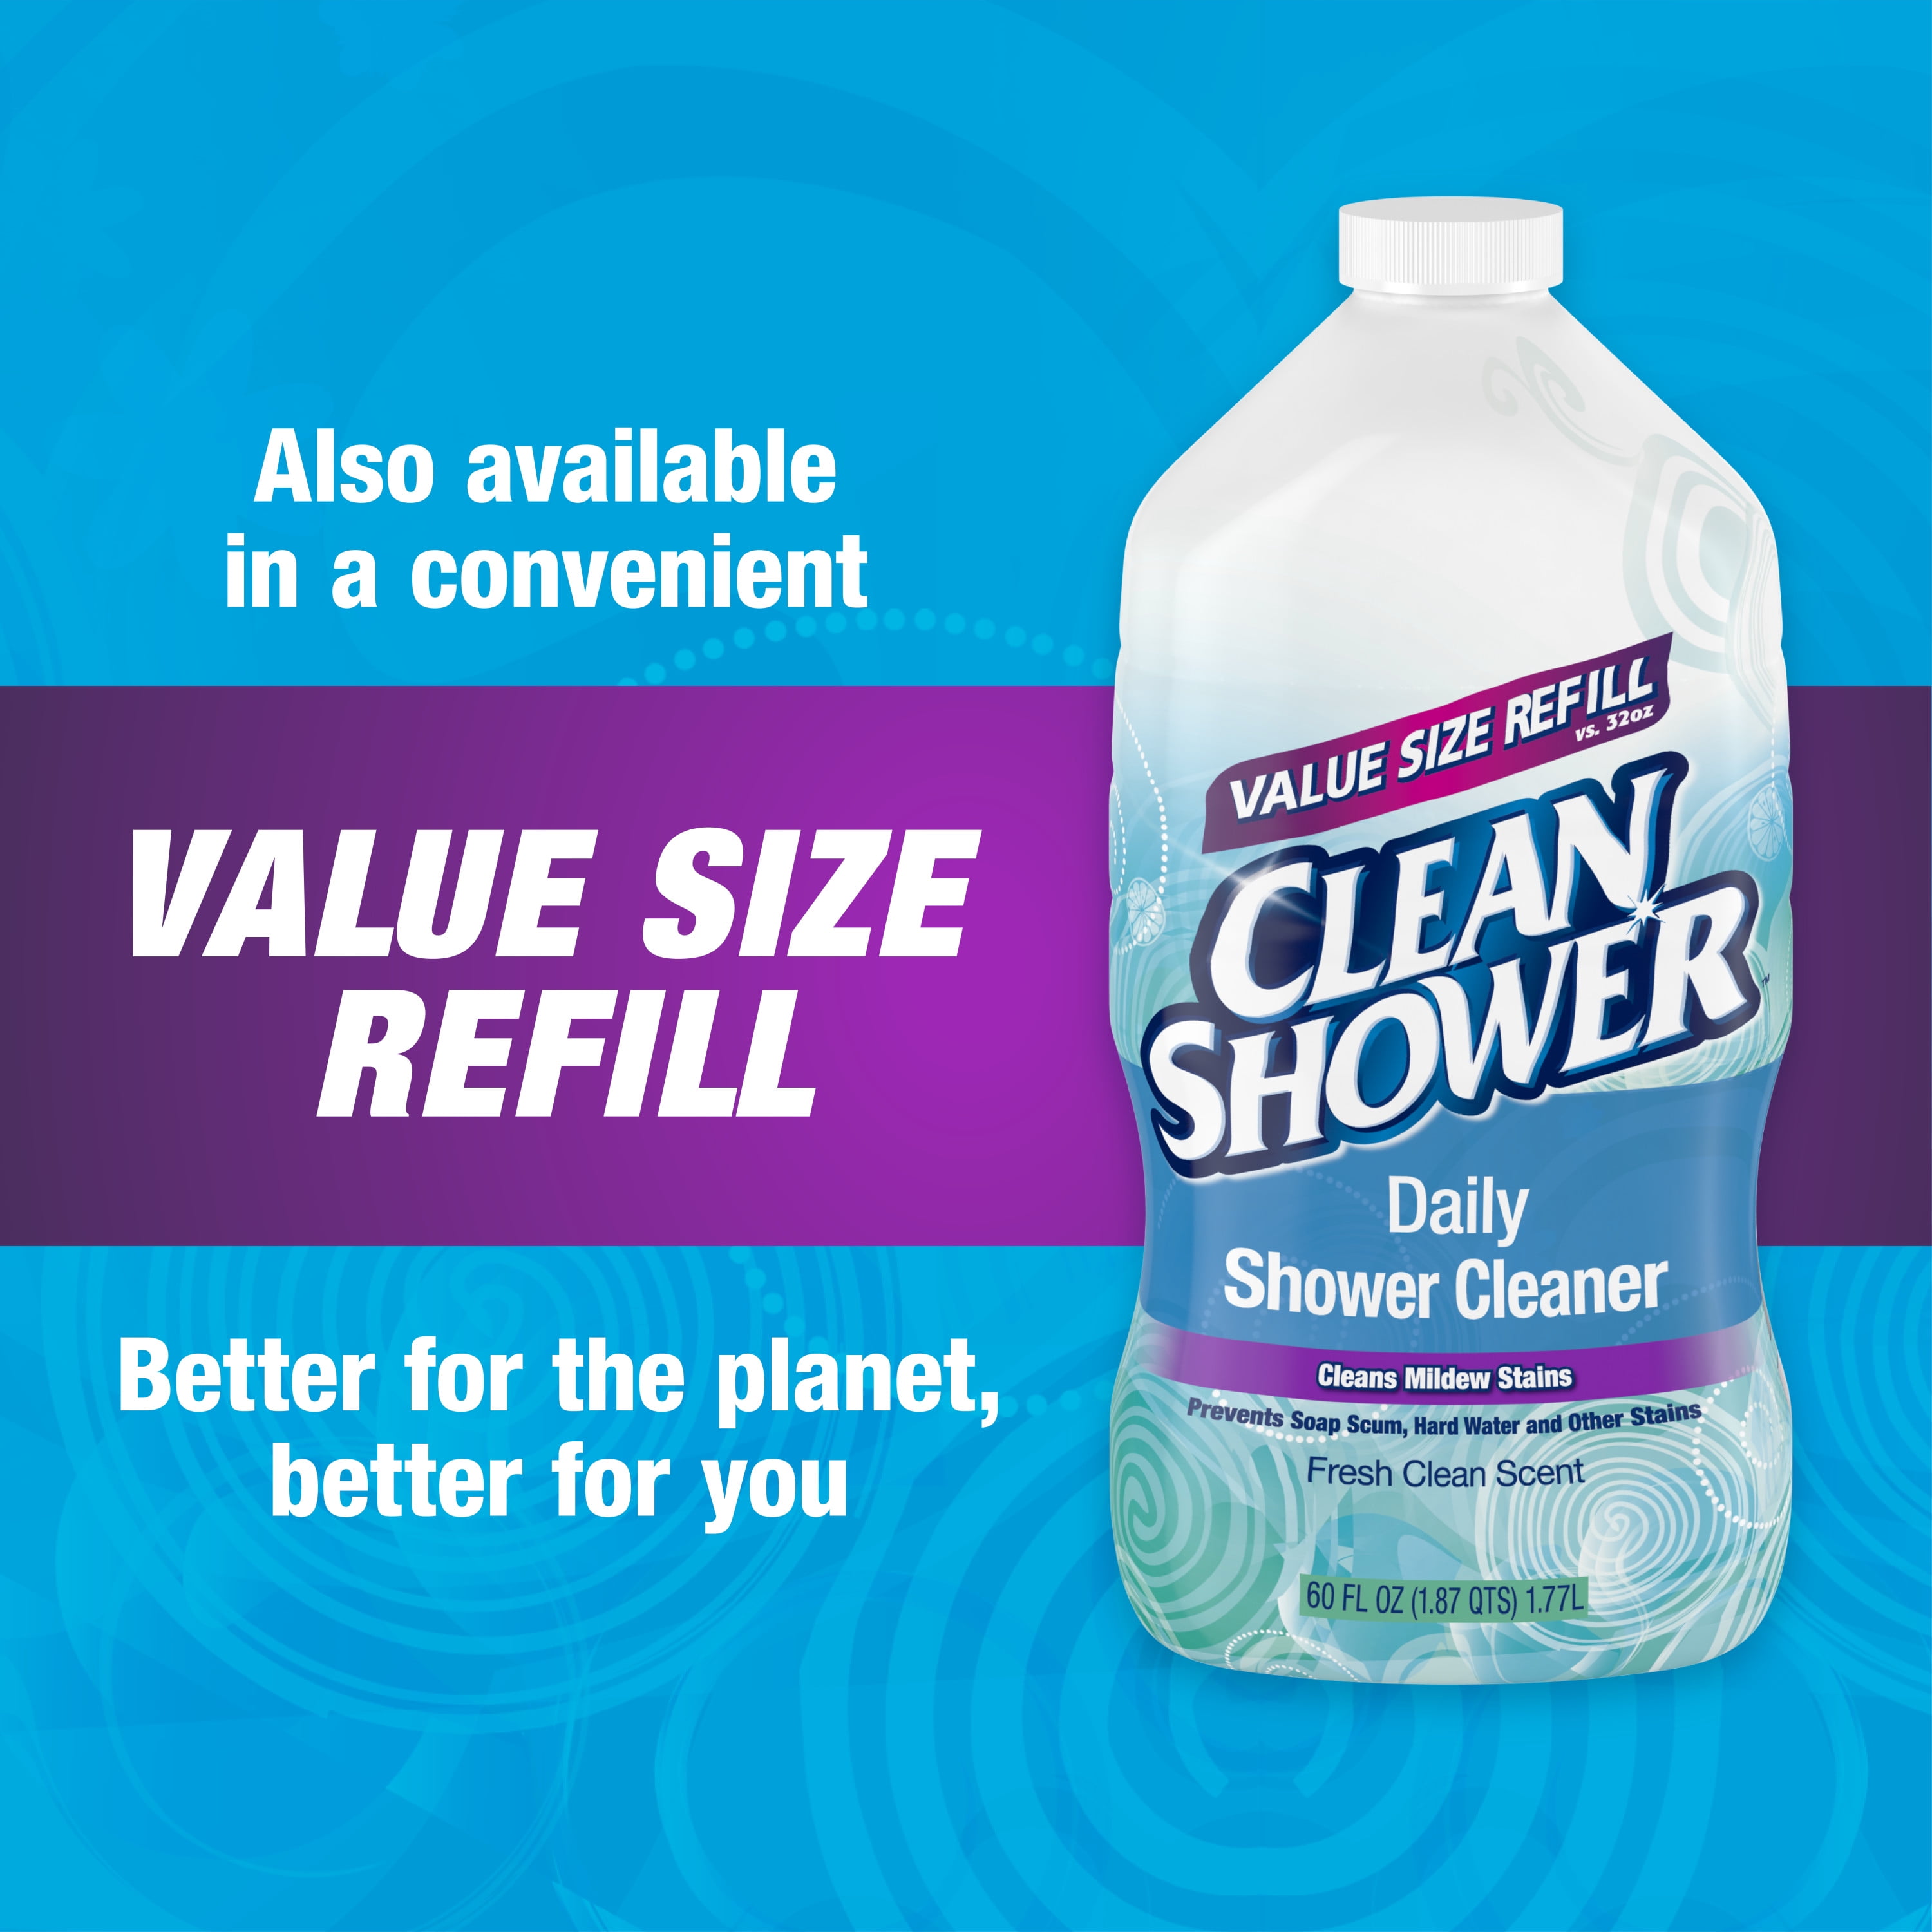 Clean Shower Daily Shower Cleaner, 32 fl oz - Kroger